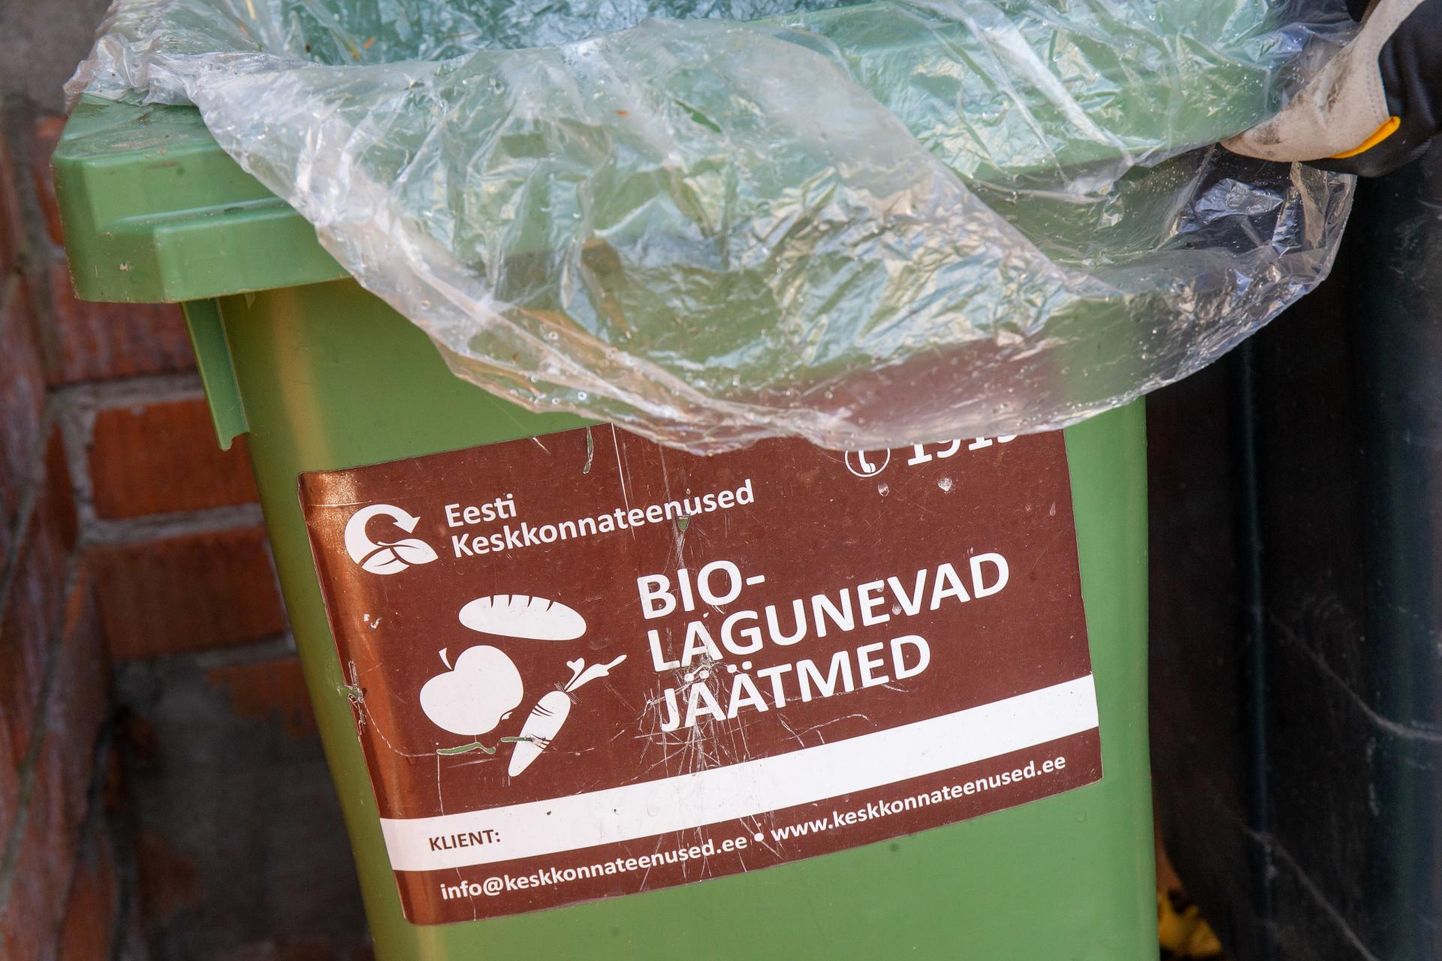 Biojäätmed tuleks aprillist alates viia selleks ette nähtud eraldi prügikasti, soovitavalt puistates jäätmed kotist või ämbrist välja lahtisena. Biojäätmete kogumiseks kodus võib küll kasutada kilekotti, aga see tuleb pärast tühjendamist panna olmeprügikasti.